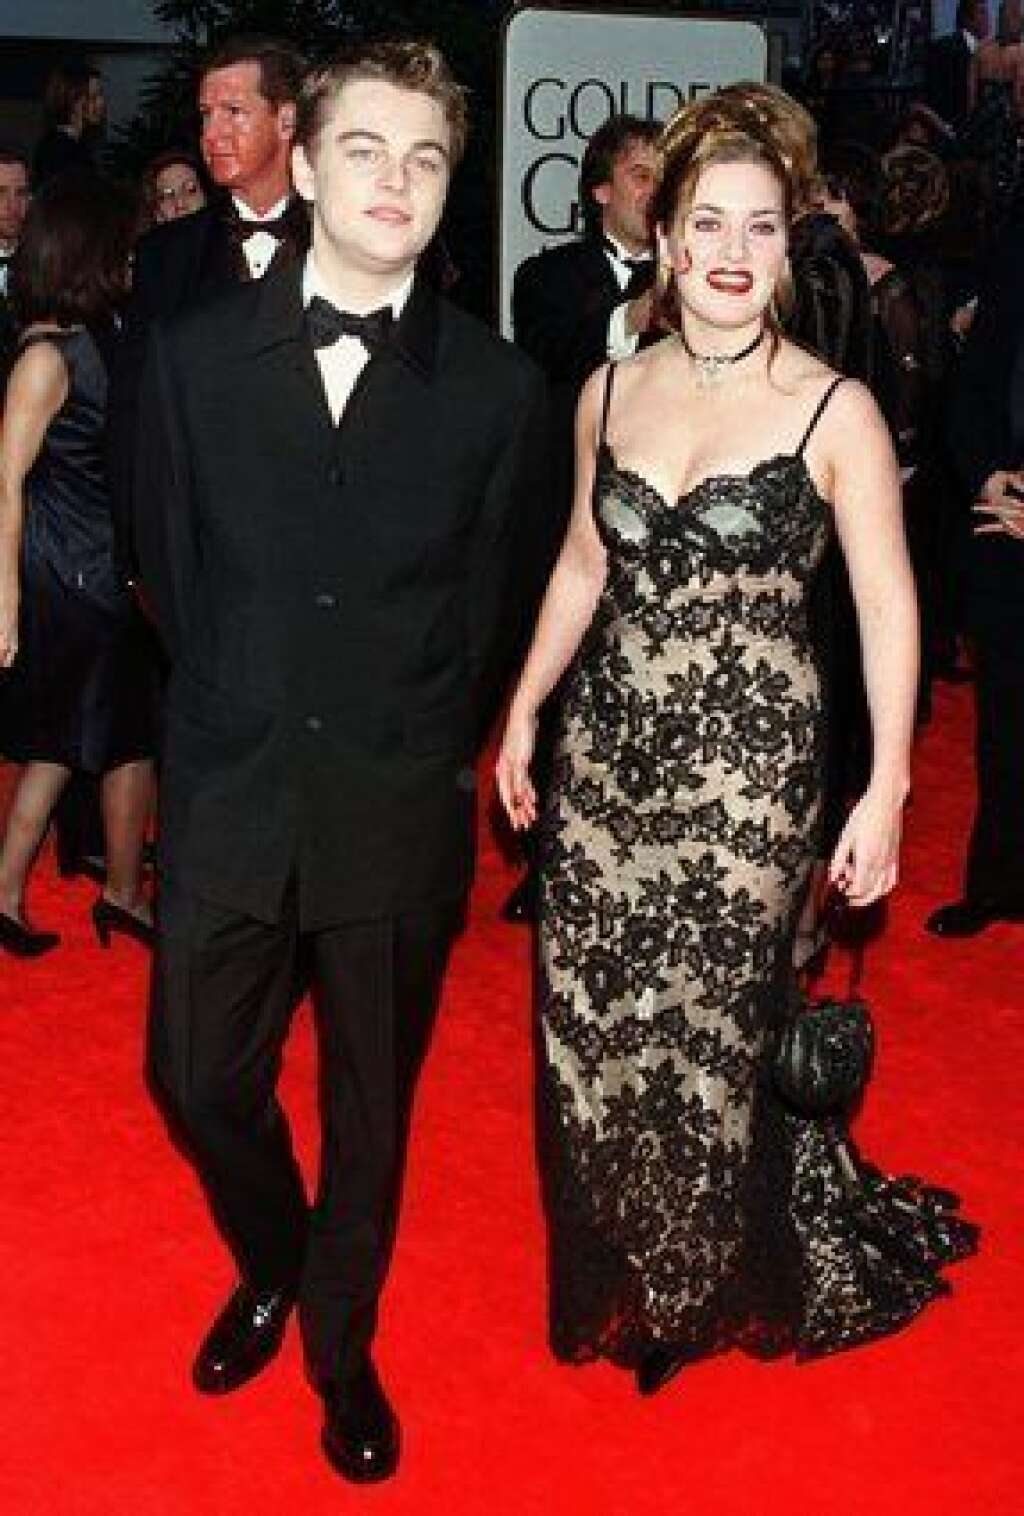 Sur le tapis rouge avec Kate Winslet - Ici pour les Golden Globe Awards en janvier 1998.